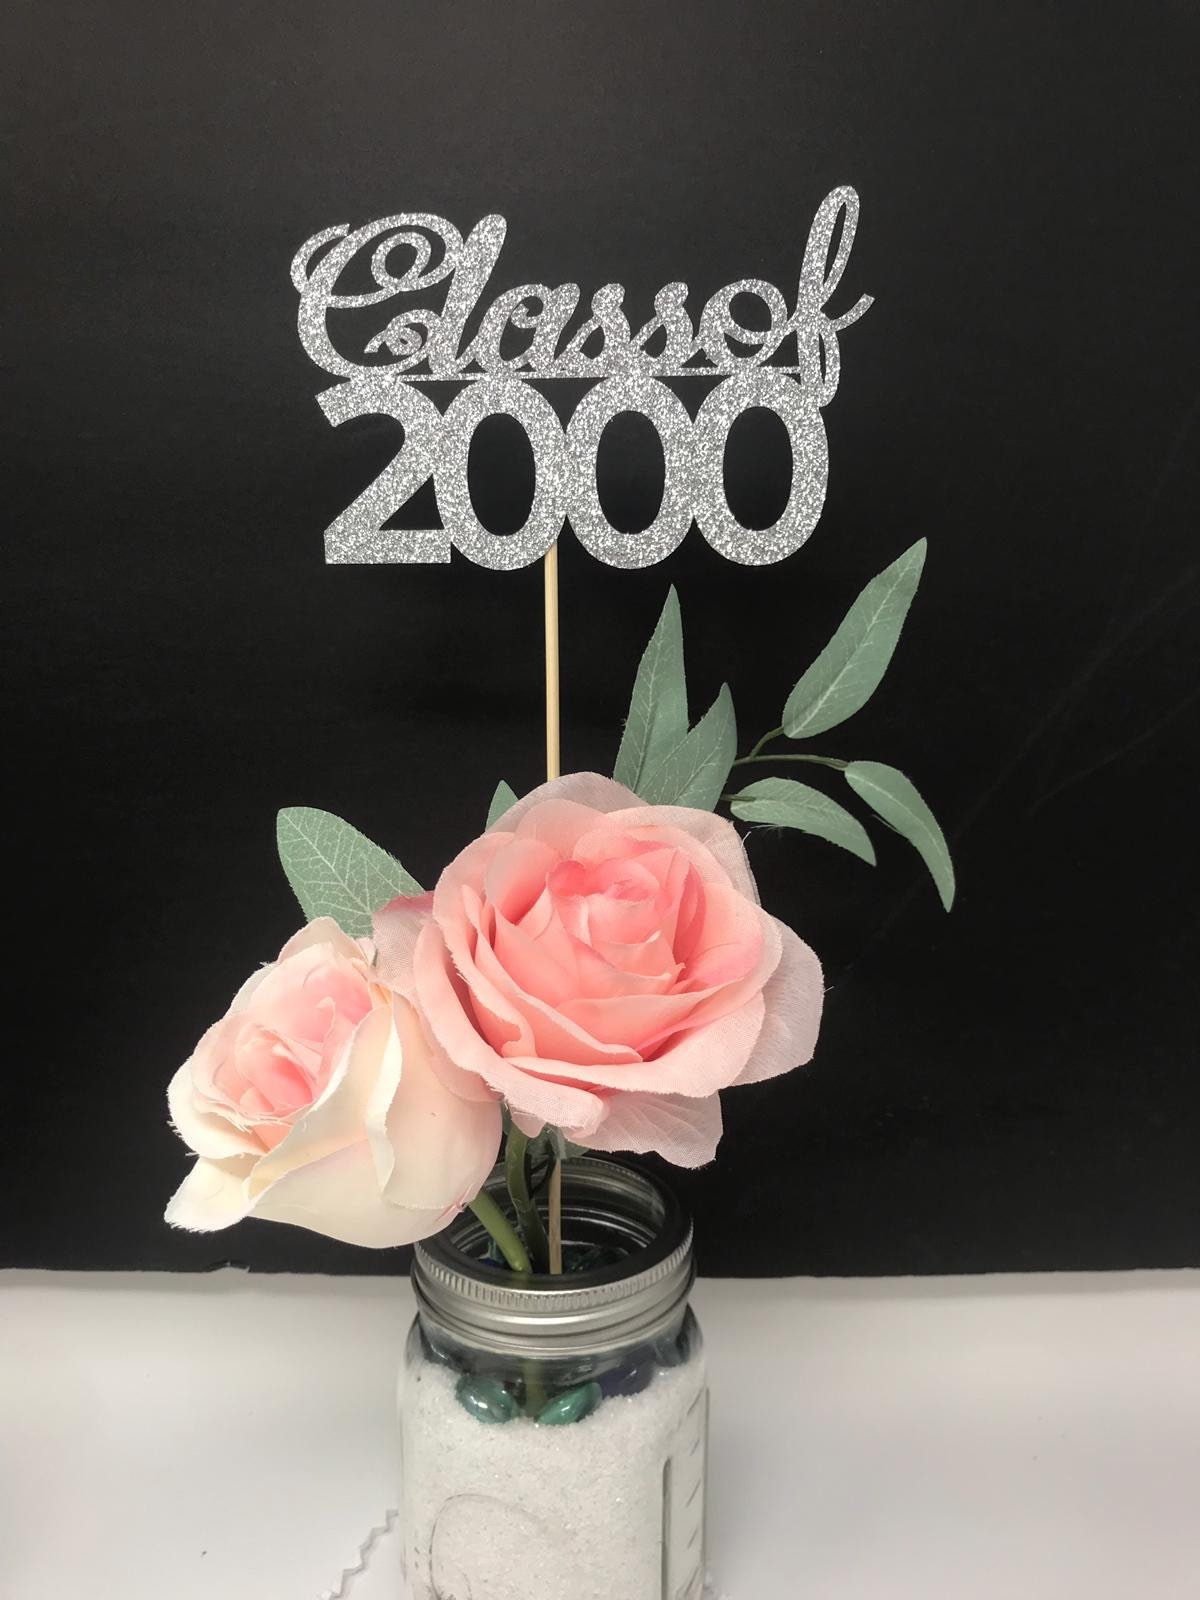 Class Of 2000 Class Reunion Centerpiece 20 Years Class Anniversary